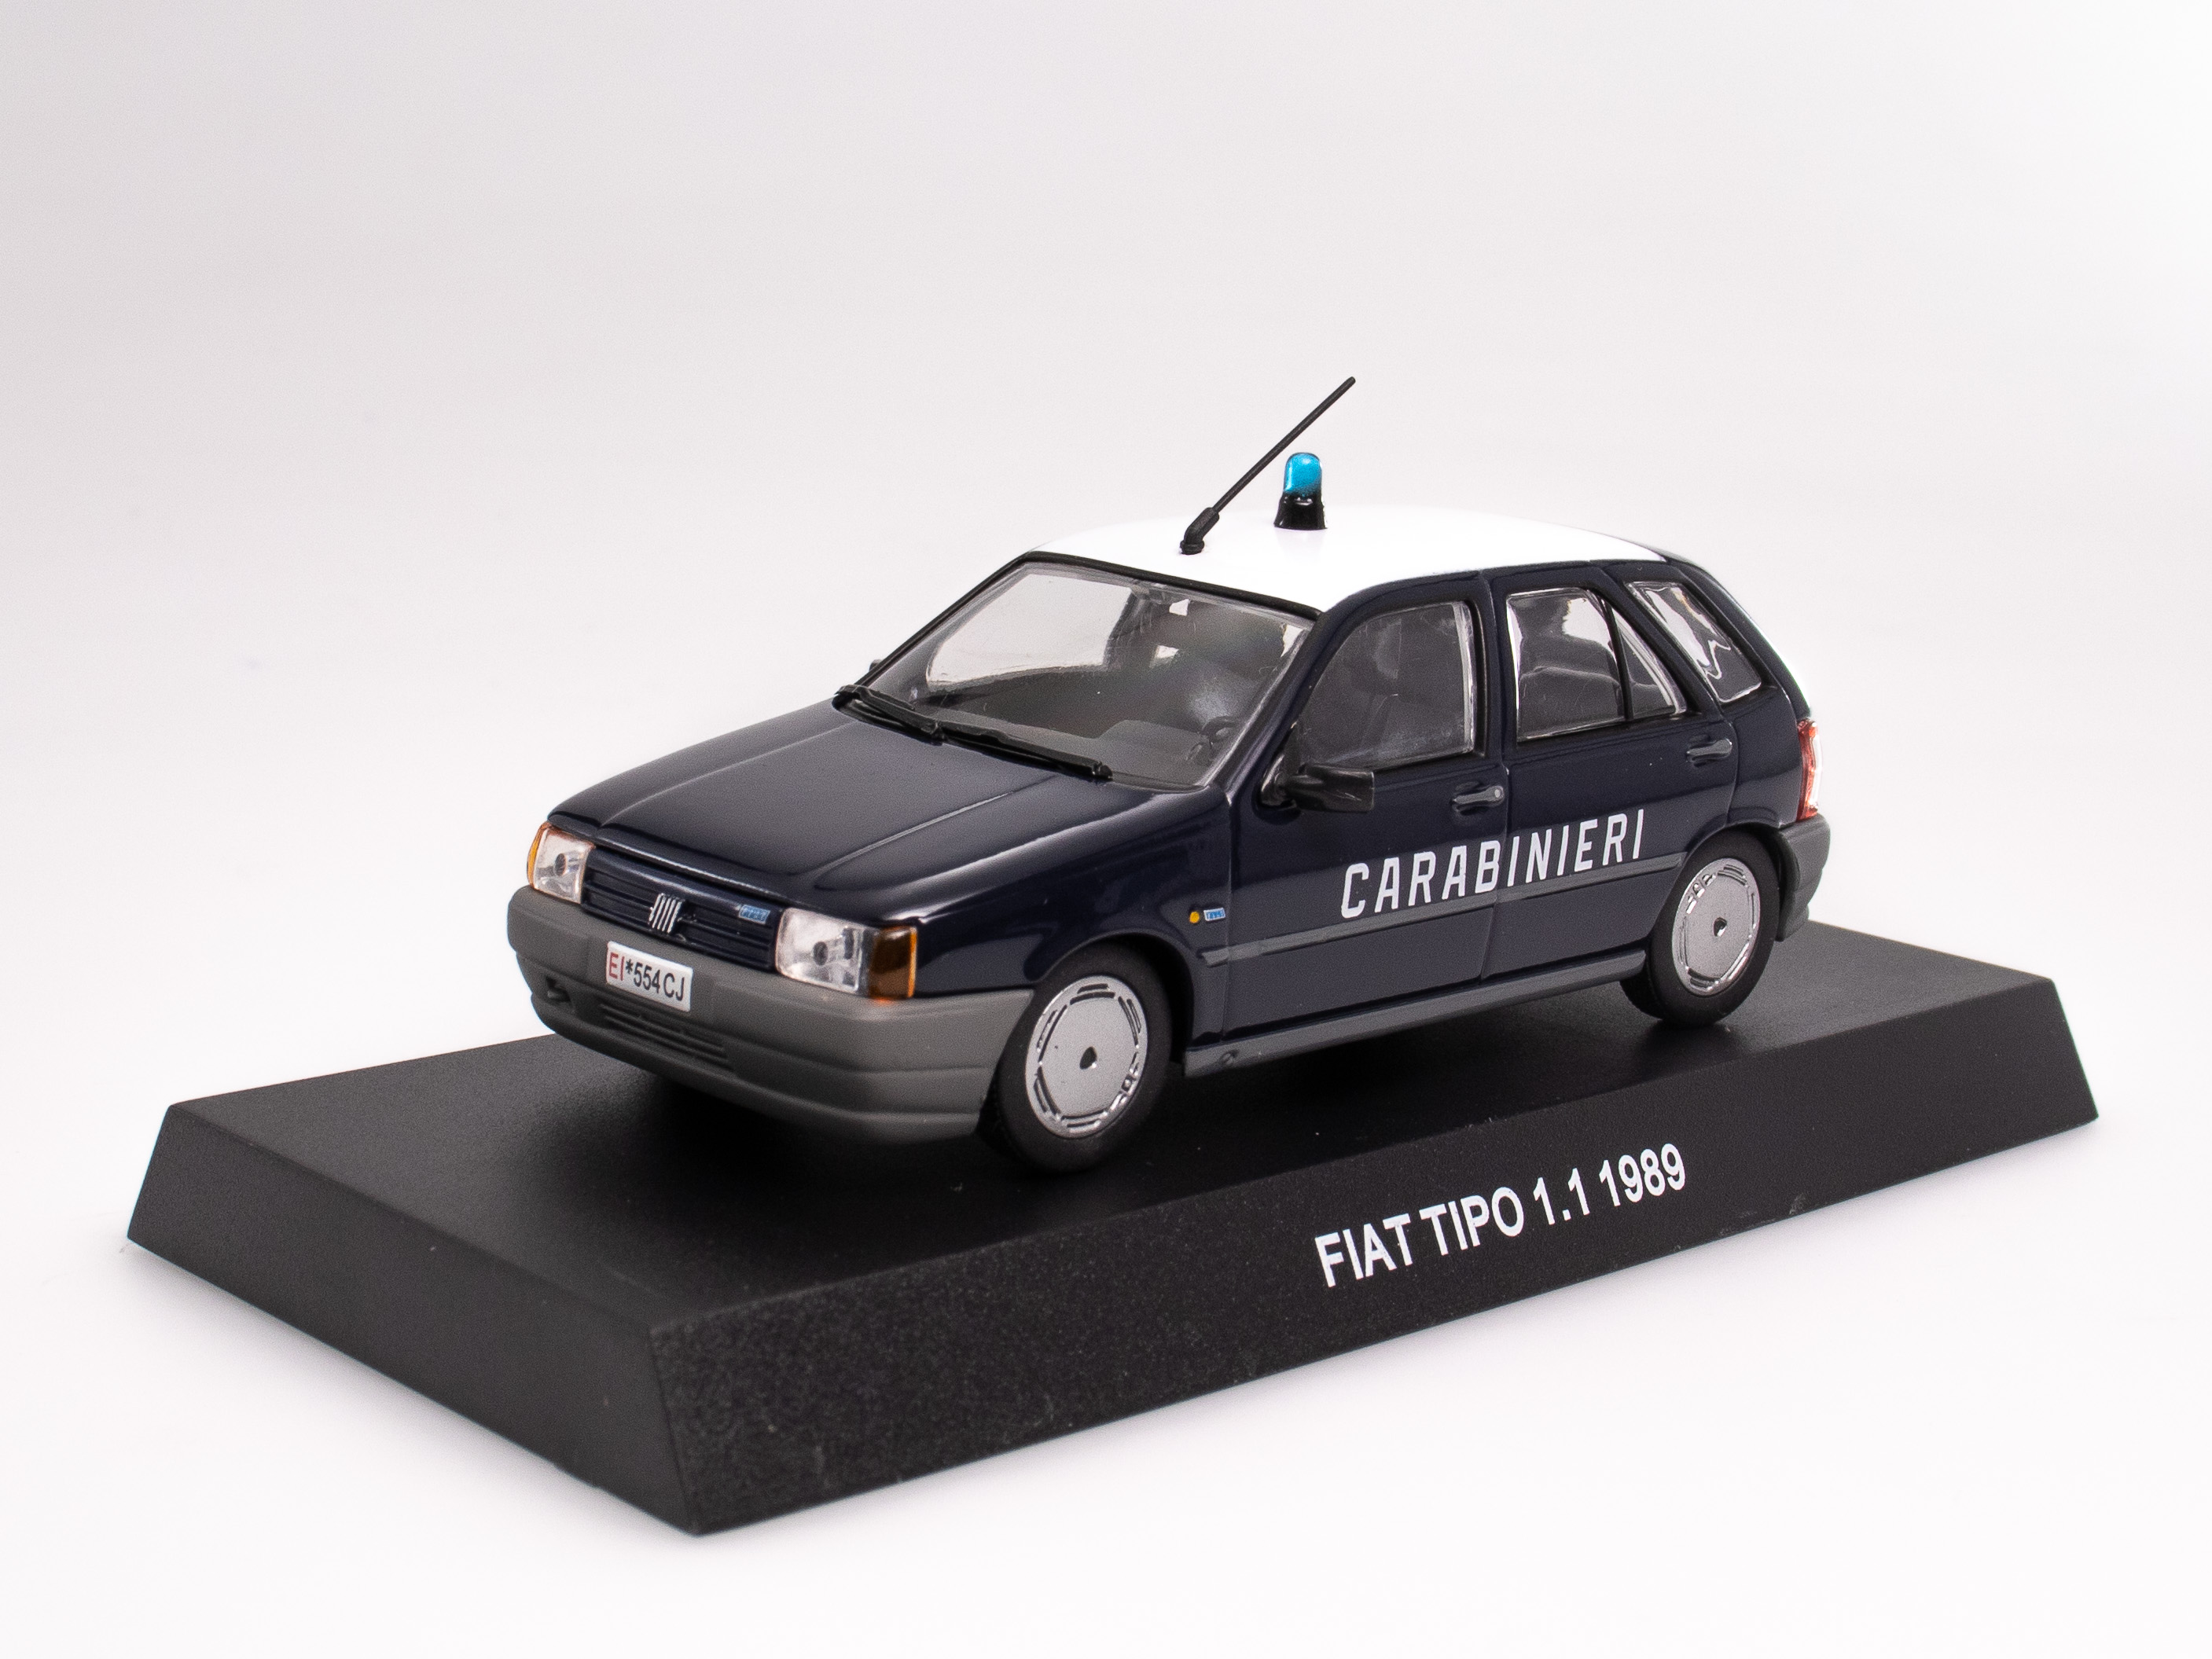 FIAT TIPO 1.1 1989